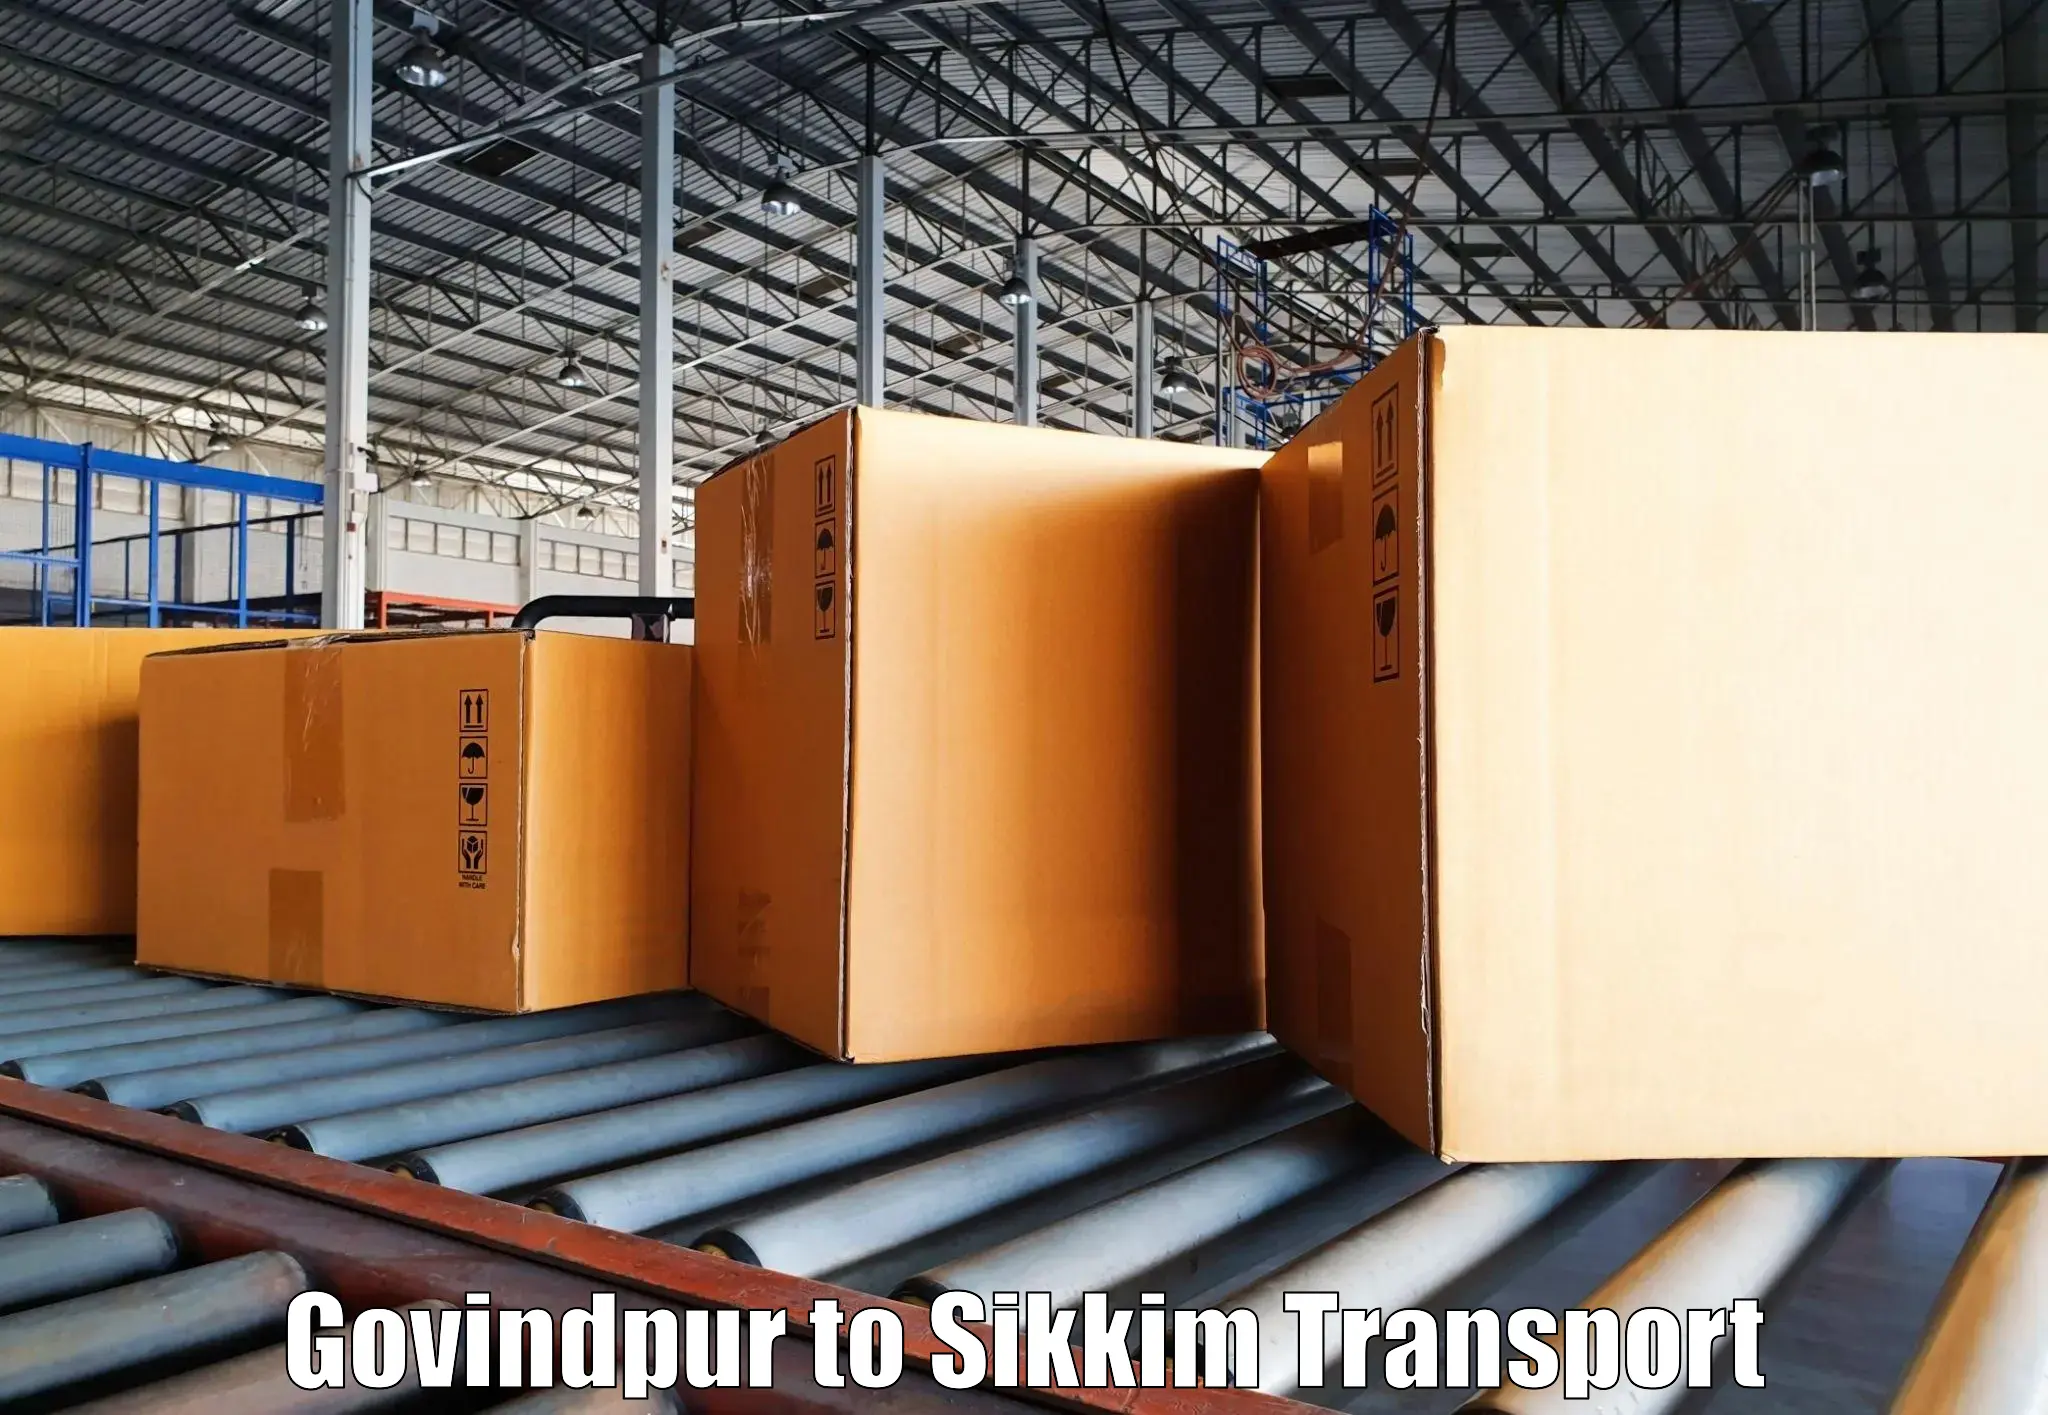 Nationwide transport services Govindpur to East Sikkim